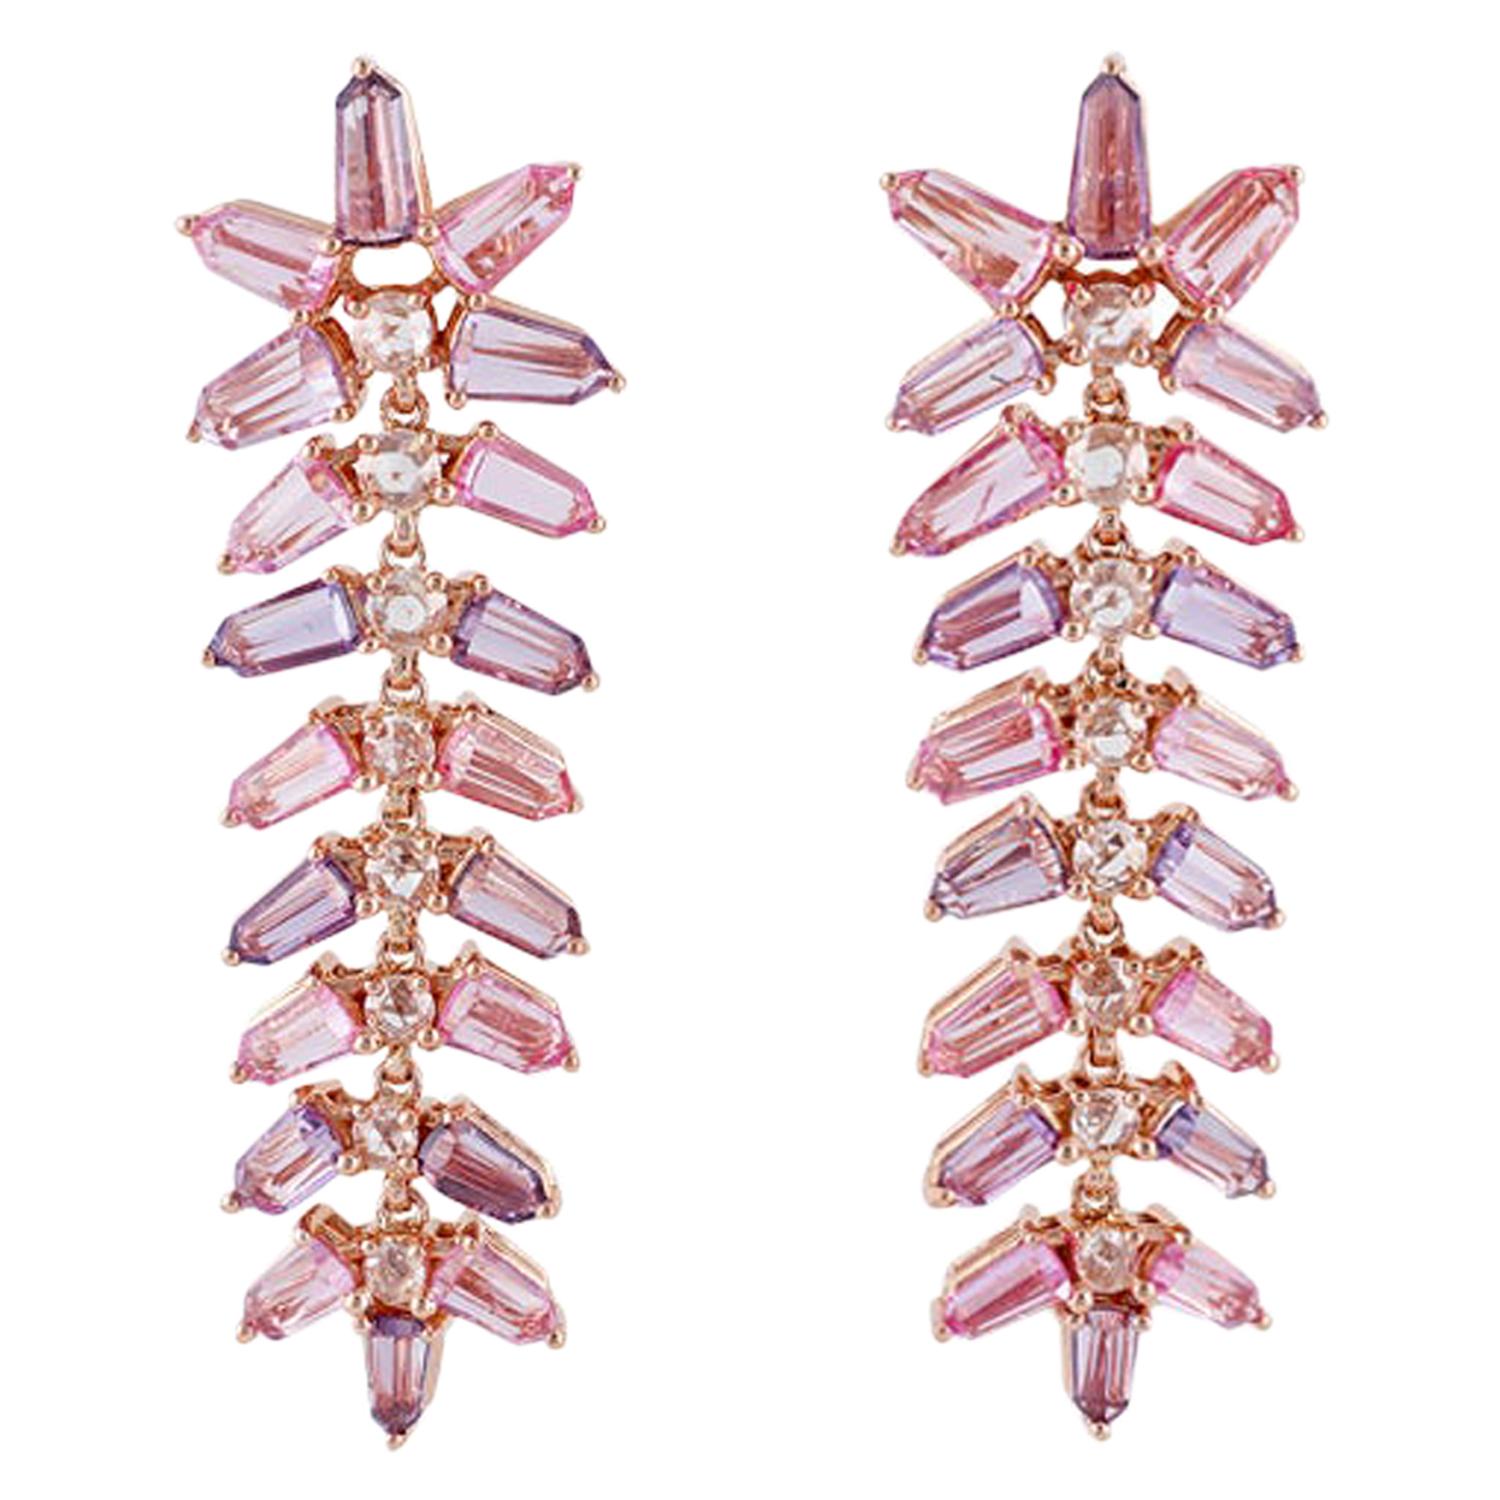 Ohrring aus 18 Karat Roségold mit rosa Saphiren und Diamanten besetzt